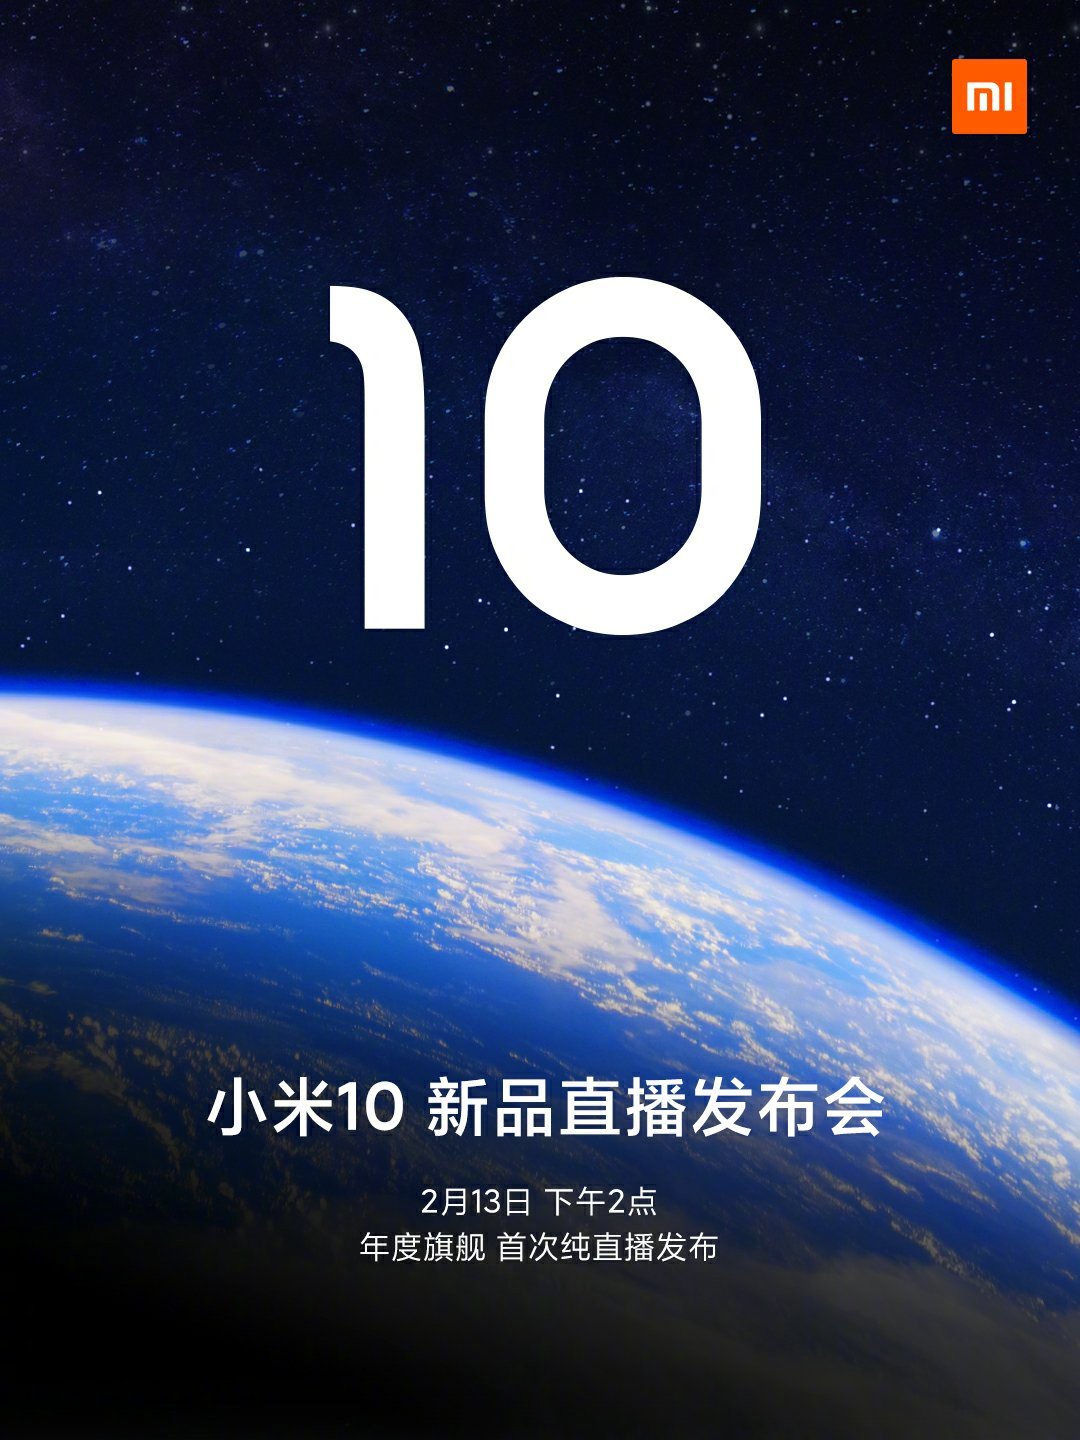 Xiaomi Mi 10 Invitation (1)